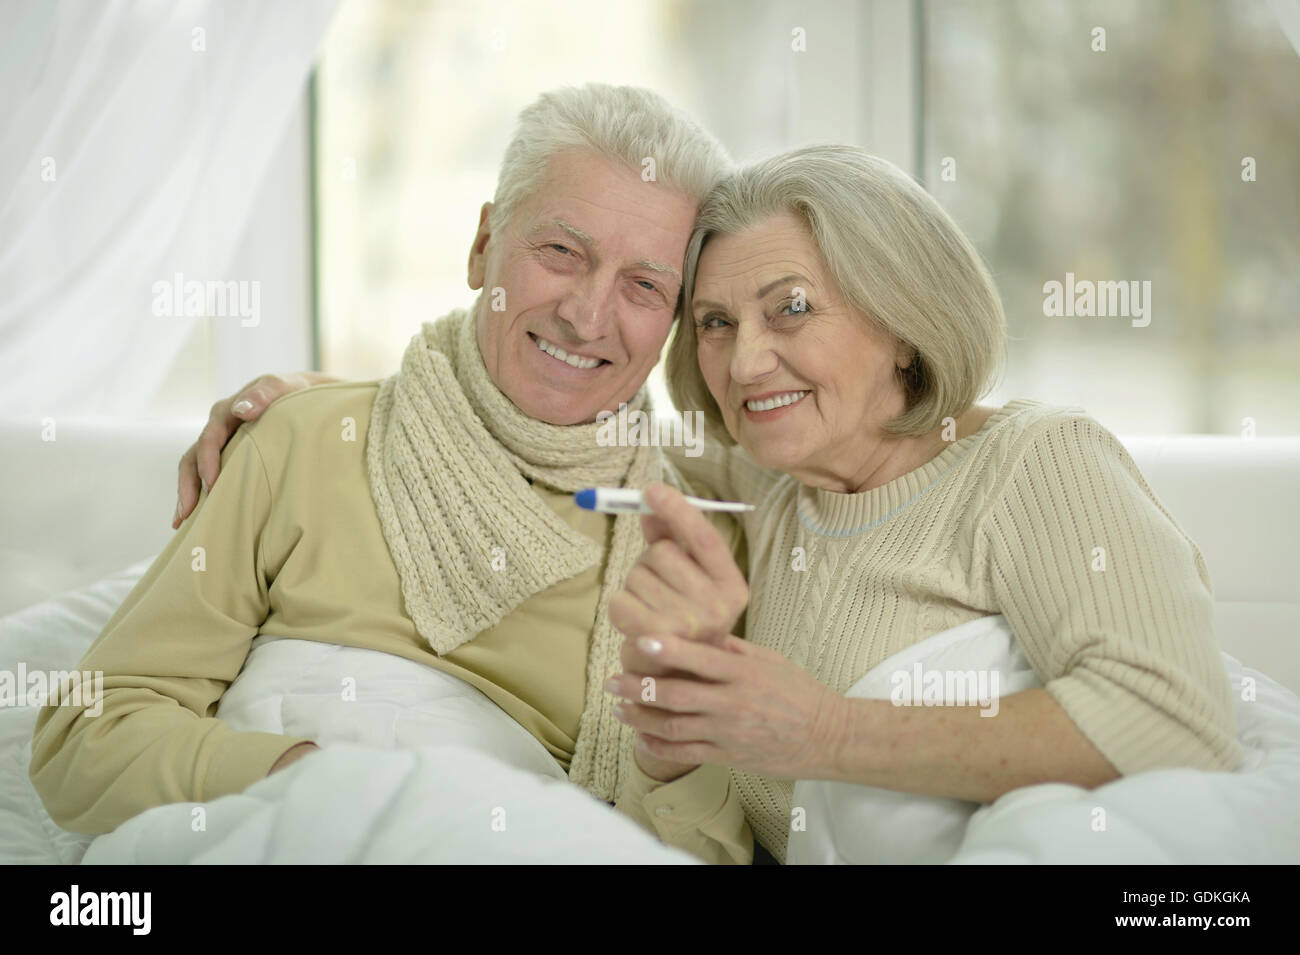 Personnes âgées malades couple in bed Banque D'Images